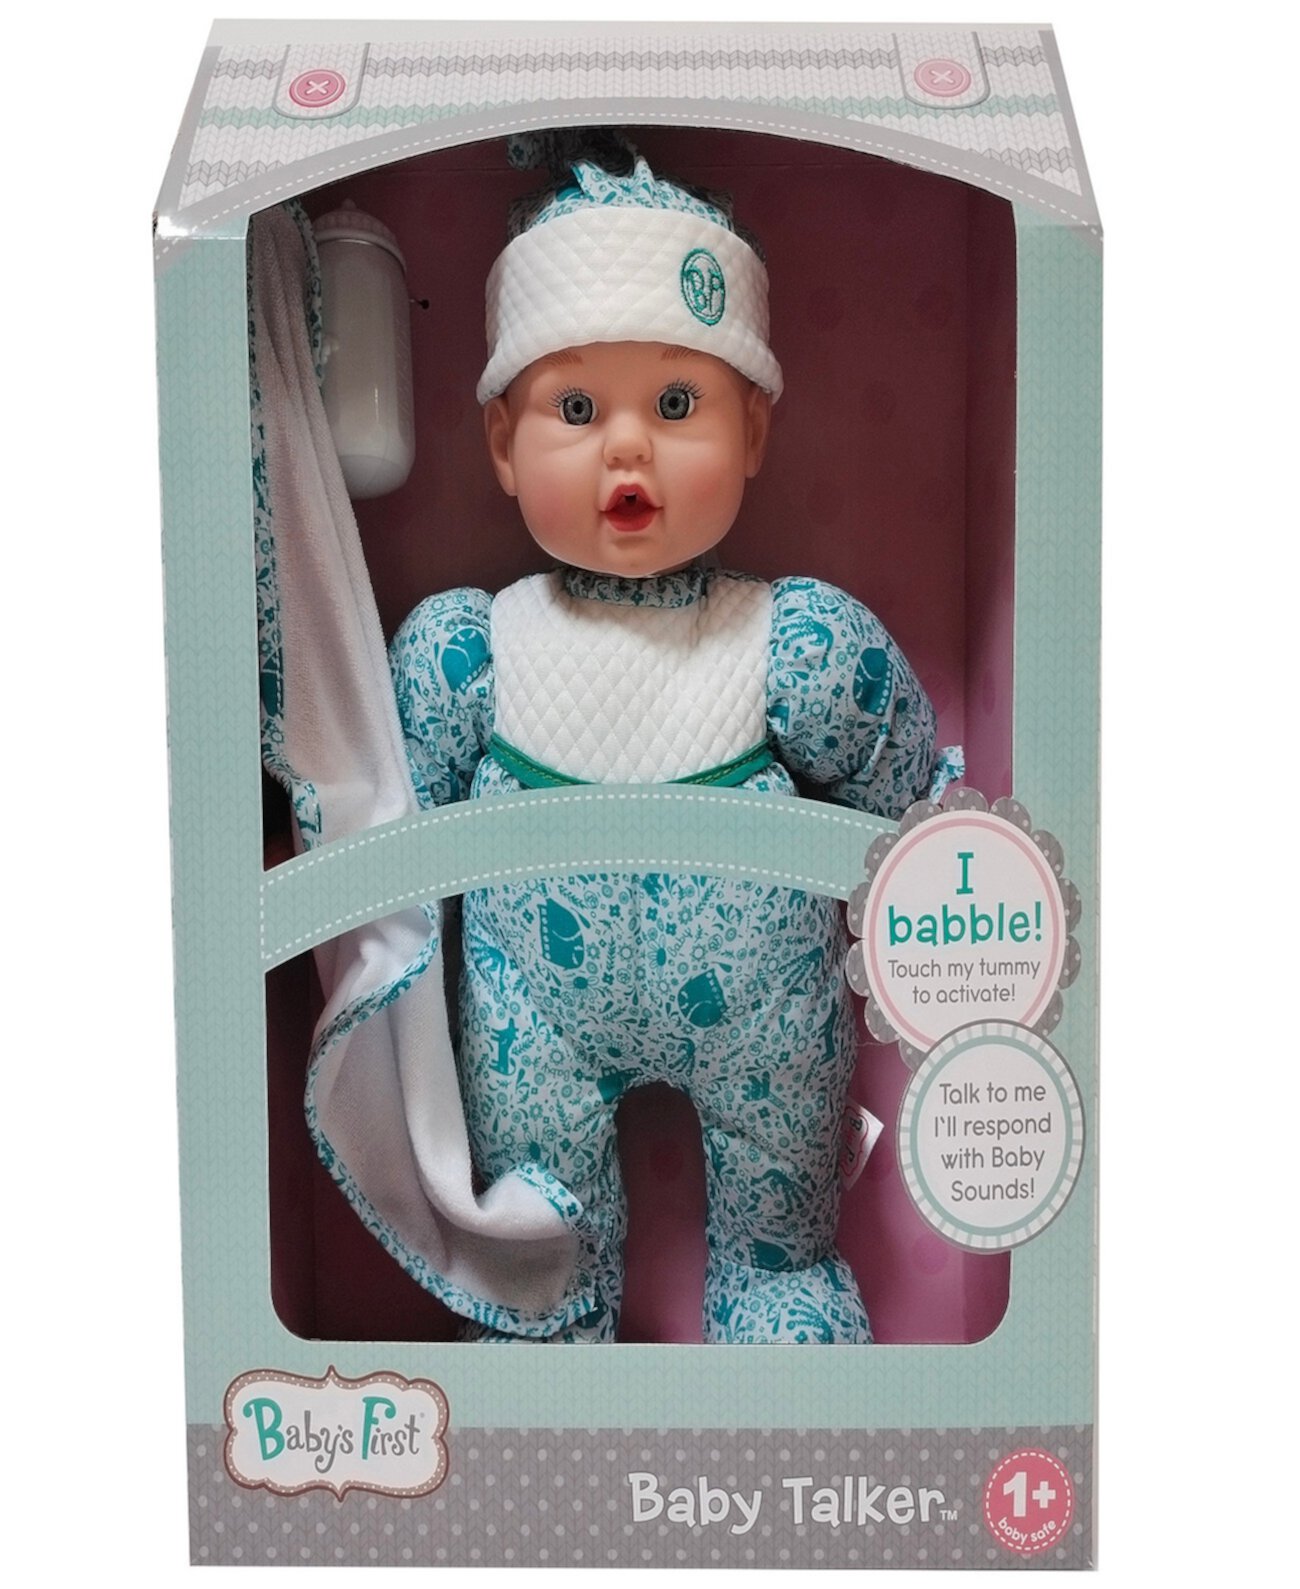 Интерактивная кукла Baby Talker Baby's First by Nemcor